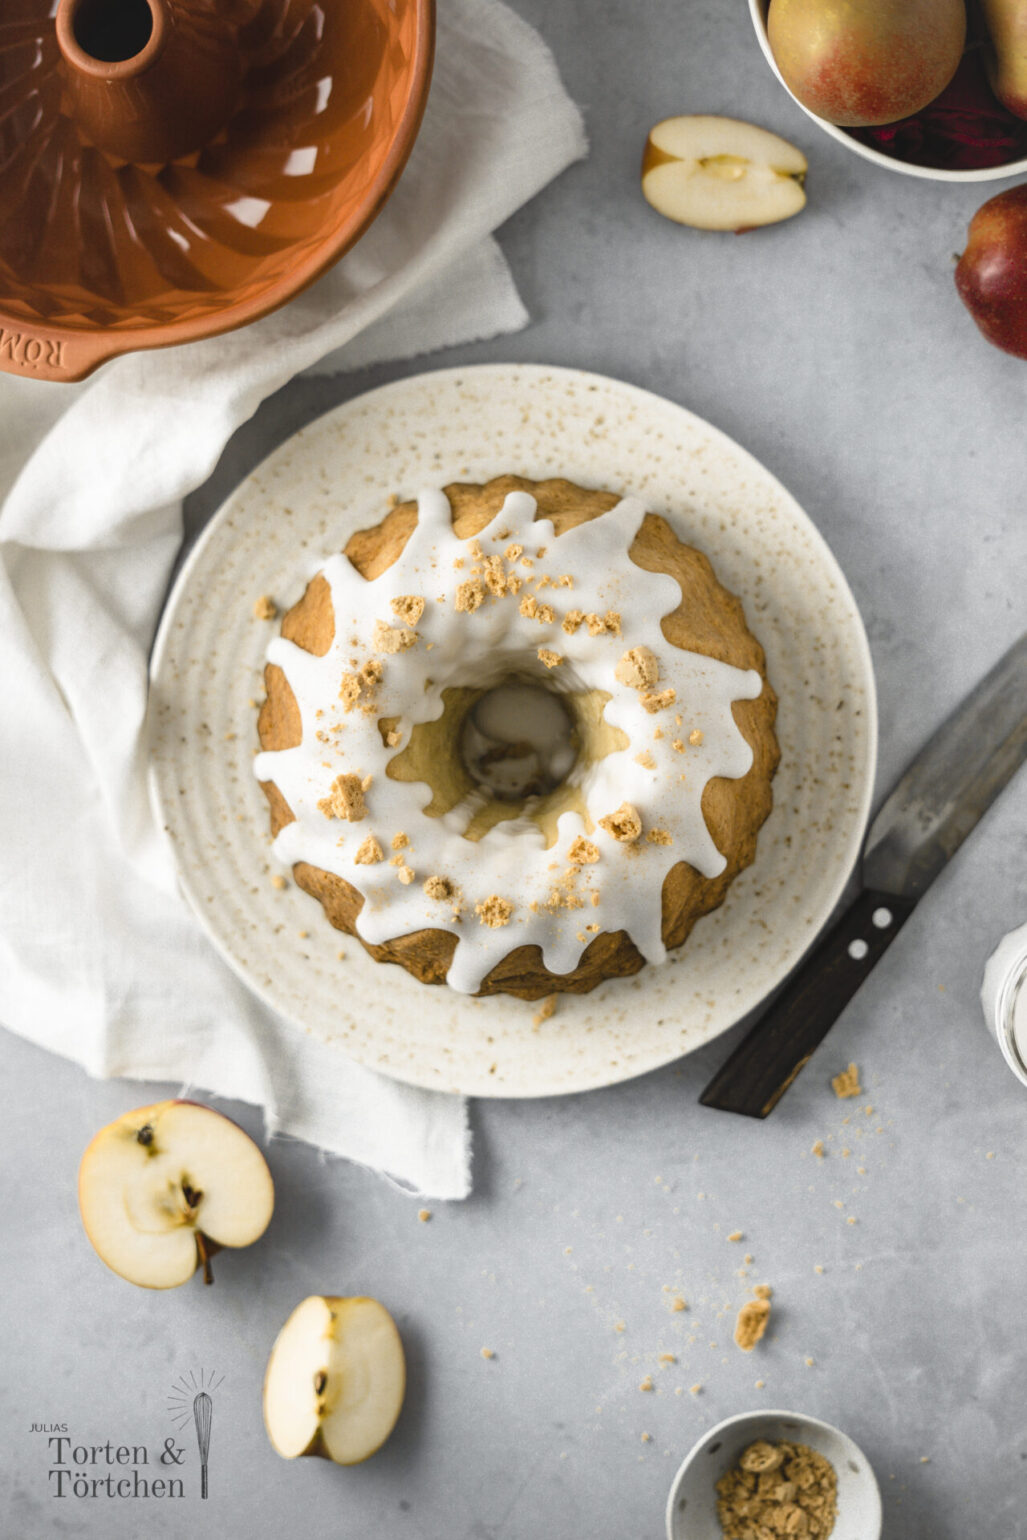 Einfaches Rezept für saftigen Apfel Gugelhupf mit Amarettini und schnellem Guss. Perfekter Kuchen fürs Büro, da er mit den Äpfeln lange saftig bleibt und nicht gekühlt werden muss! #Gugelhupf #Apfelkuchen #Rührkuchen #KuchenfürsBüro #Obstkuchen #Rezept #Backen